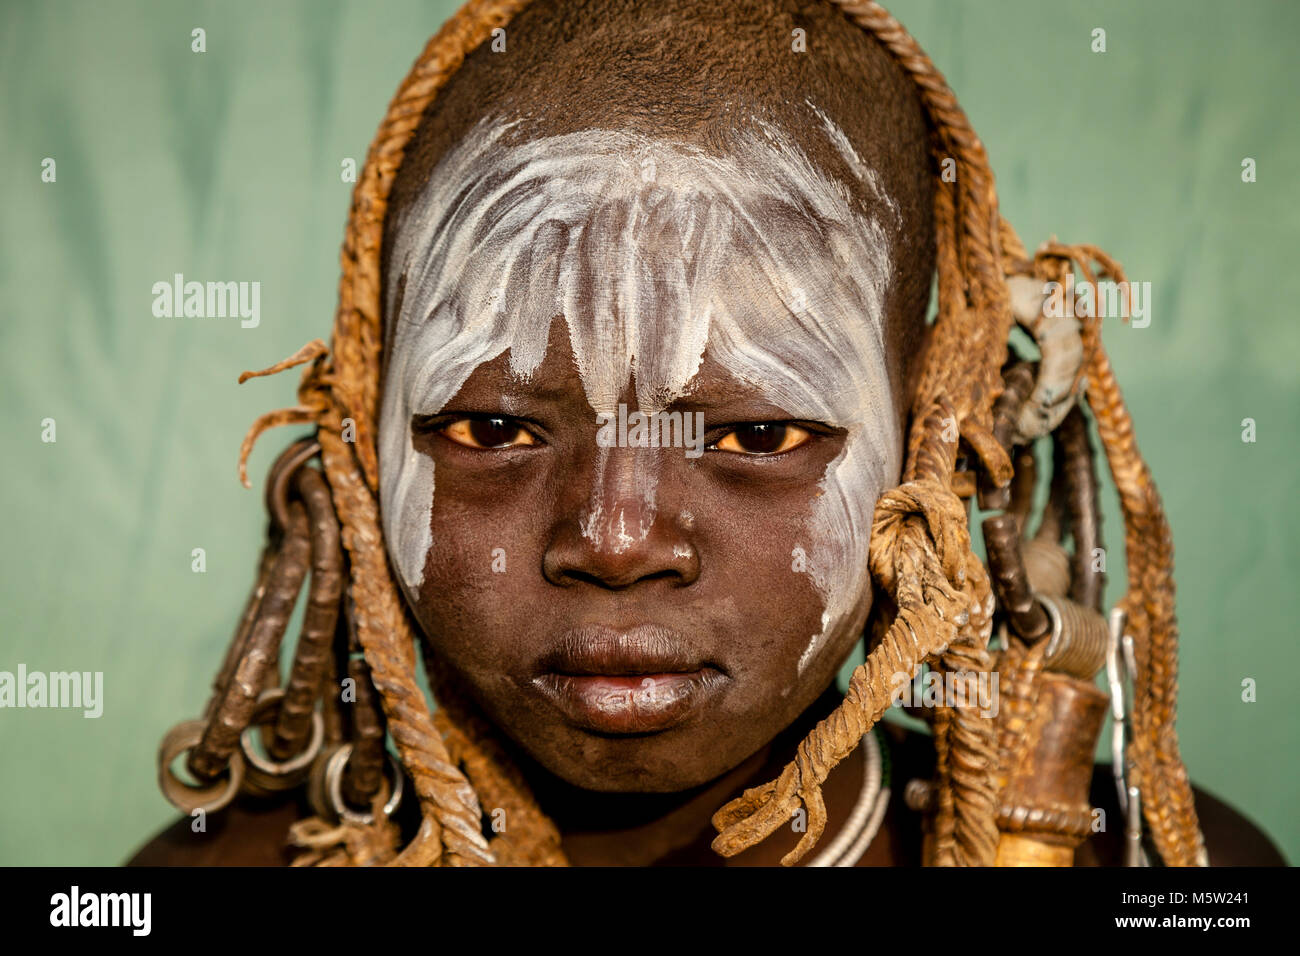 Un Portrait d'un garçon de la tribu Mursi, Morsi Village, vallée de l'Omo, Ethiopie Banque D'Images